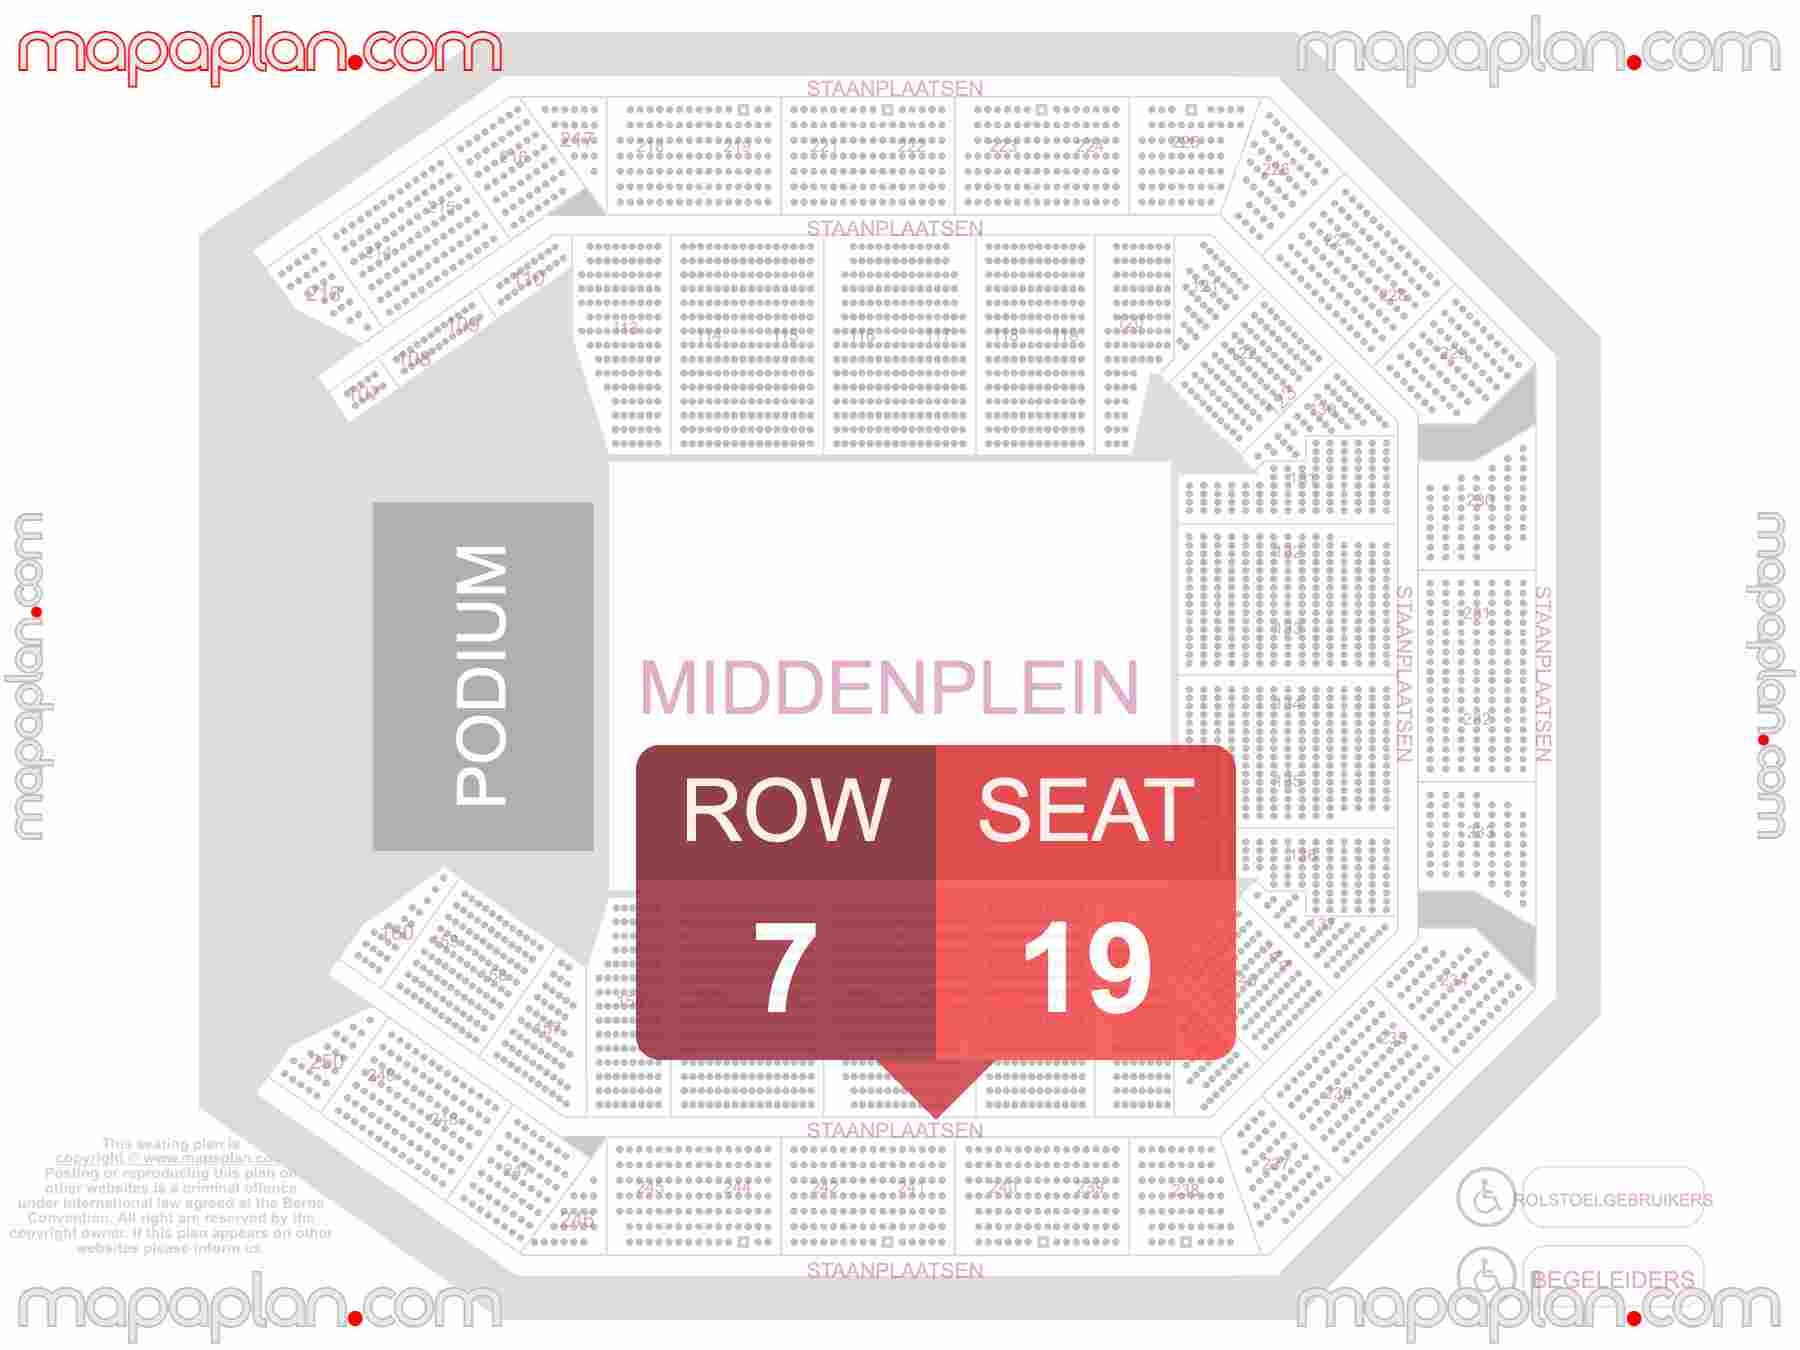 Antwerpen Lotto Arena seating plan Concerts plaatsen rijen blokken nummering verdeling zaalplan indeling met stoelnummers - inside capacity view arrangement map - Interactive virtual 3d best seats & rows detailed stadium image configuration layout